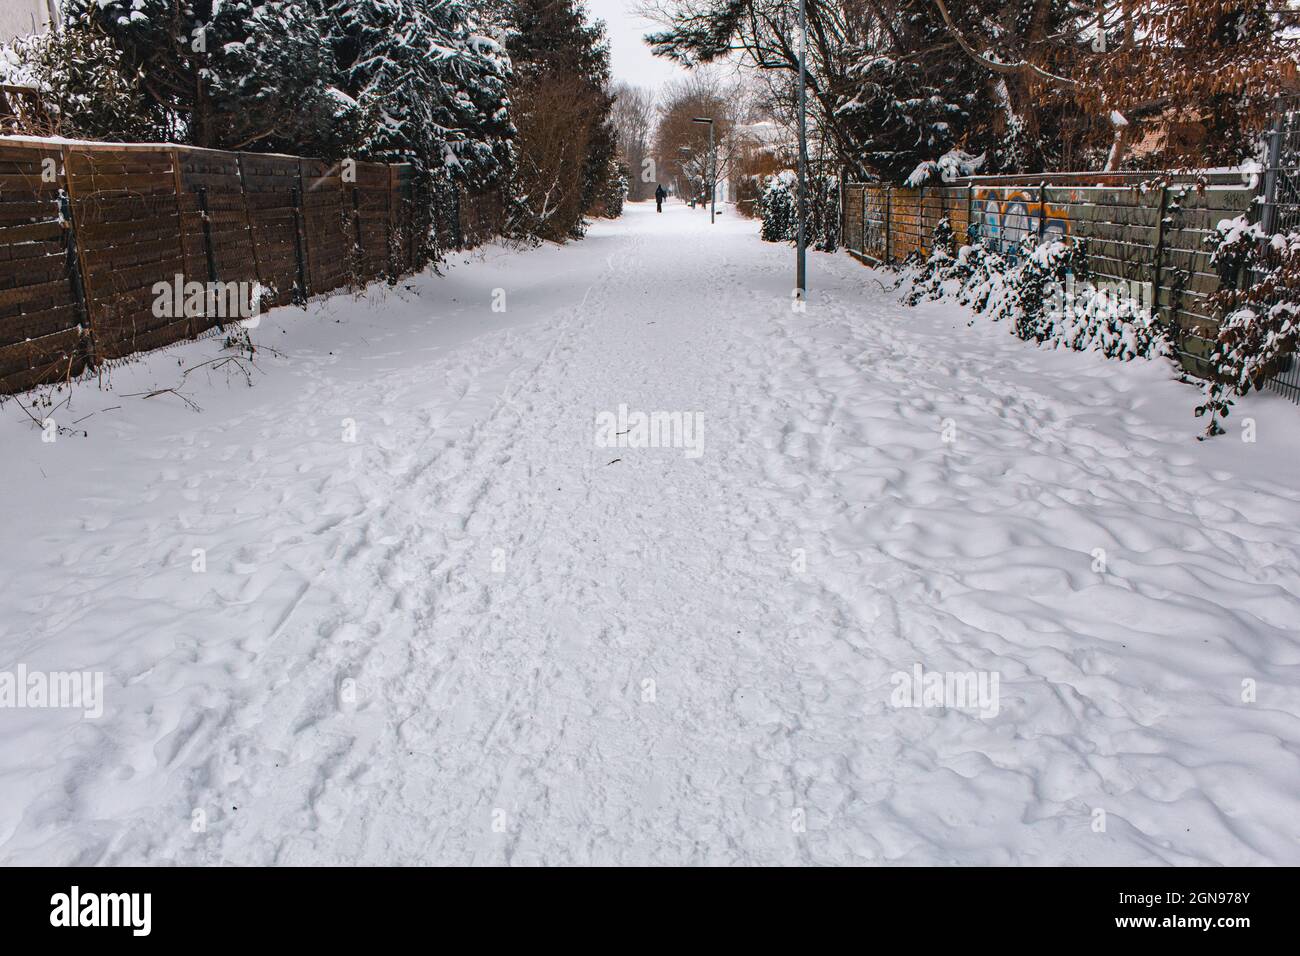 Paesaggio invernale nella città di Braunschweig, Germania. Strada pedonale e ciclabile coperta di neve chiamata Ringgleis. Stagione invernale con nevicate pesanti Foto Stock